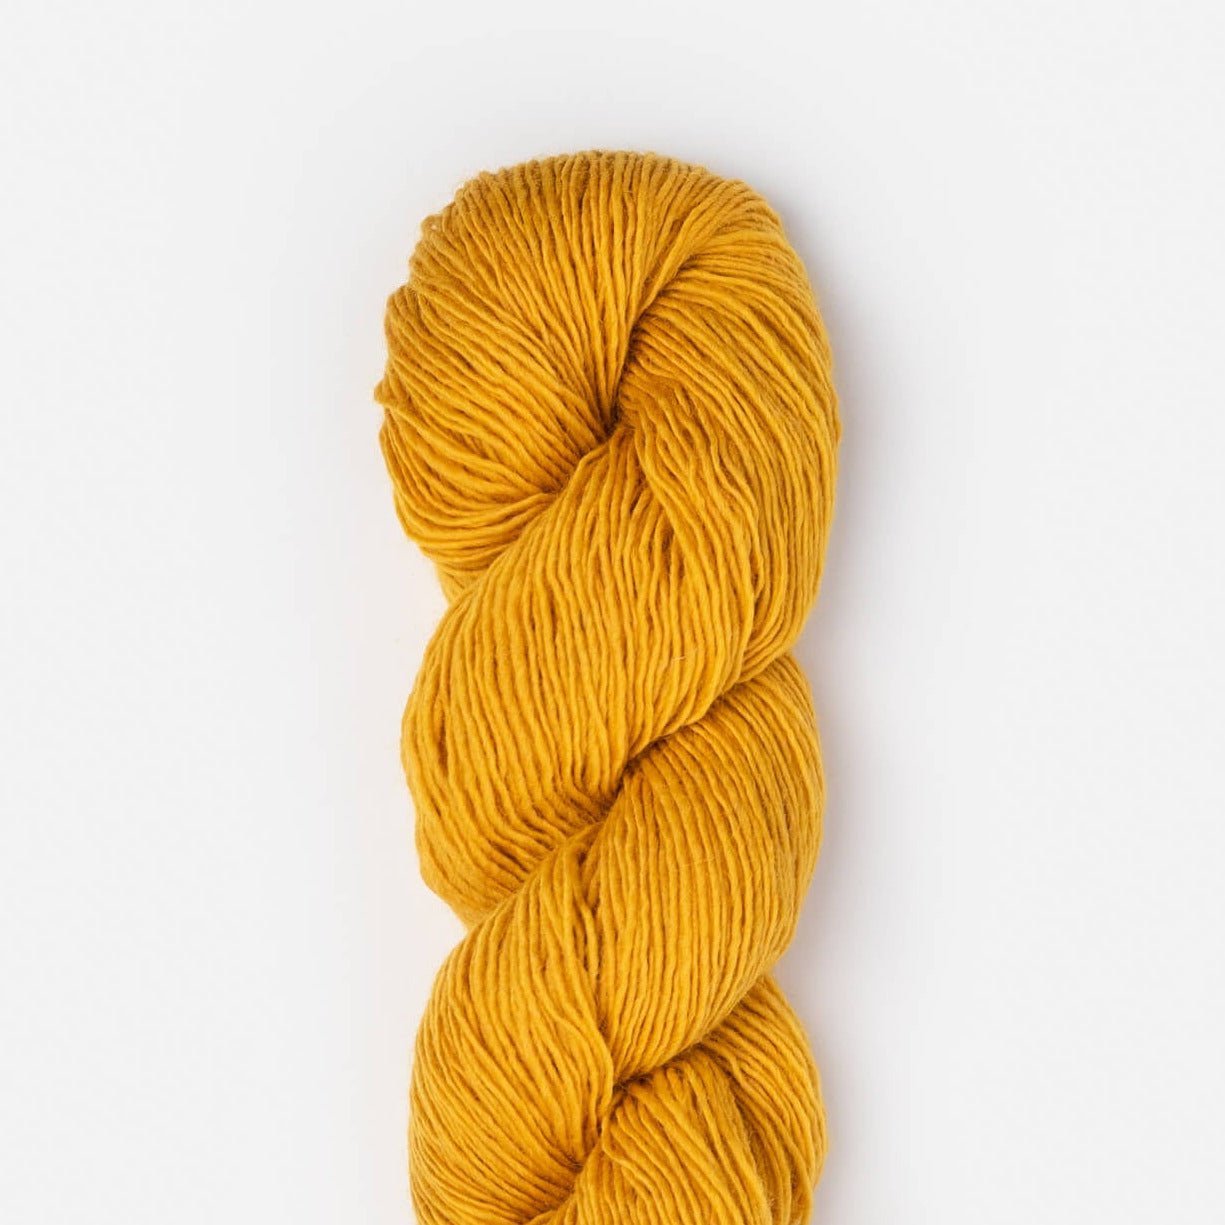 Tivoli Shawl Knitting Kit - Mary Pranica - 2316 Spun Gold - The Little Yarn Store